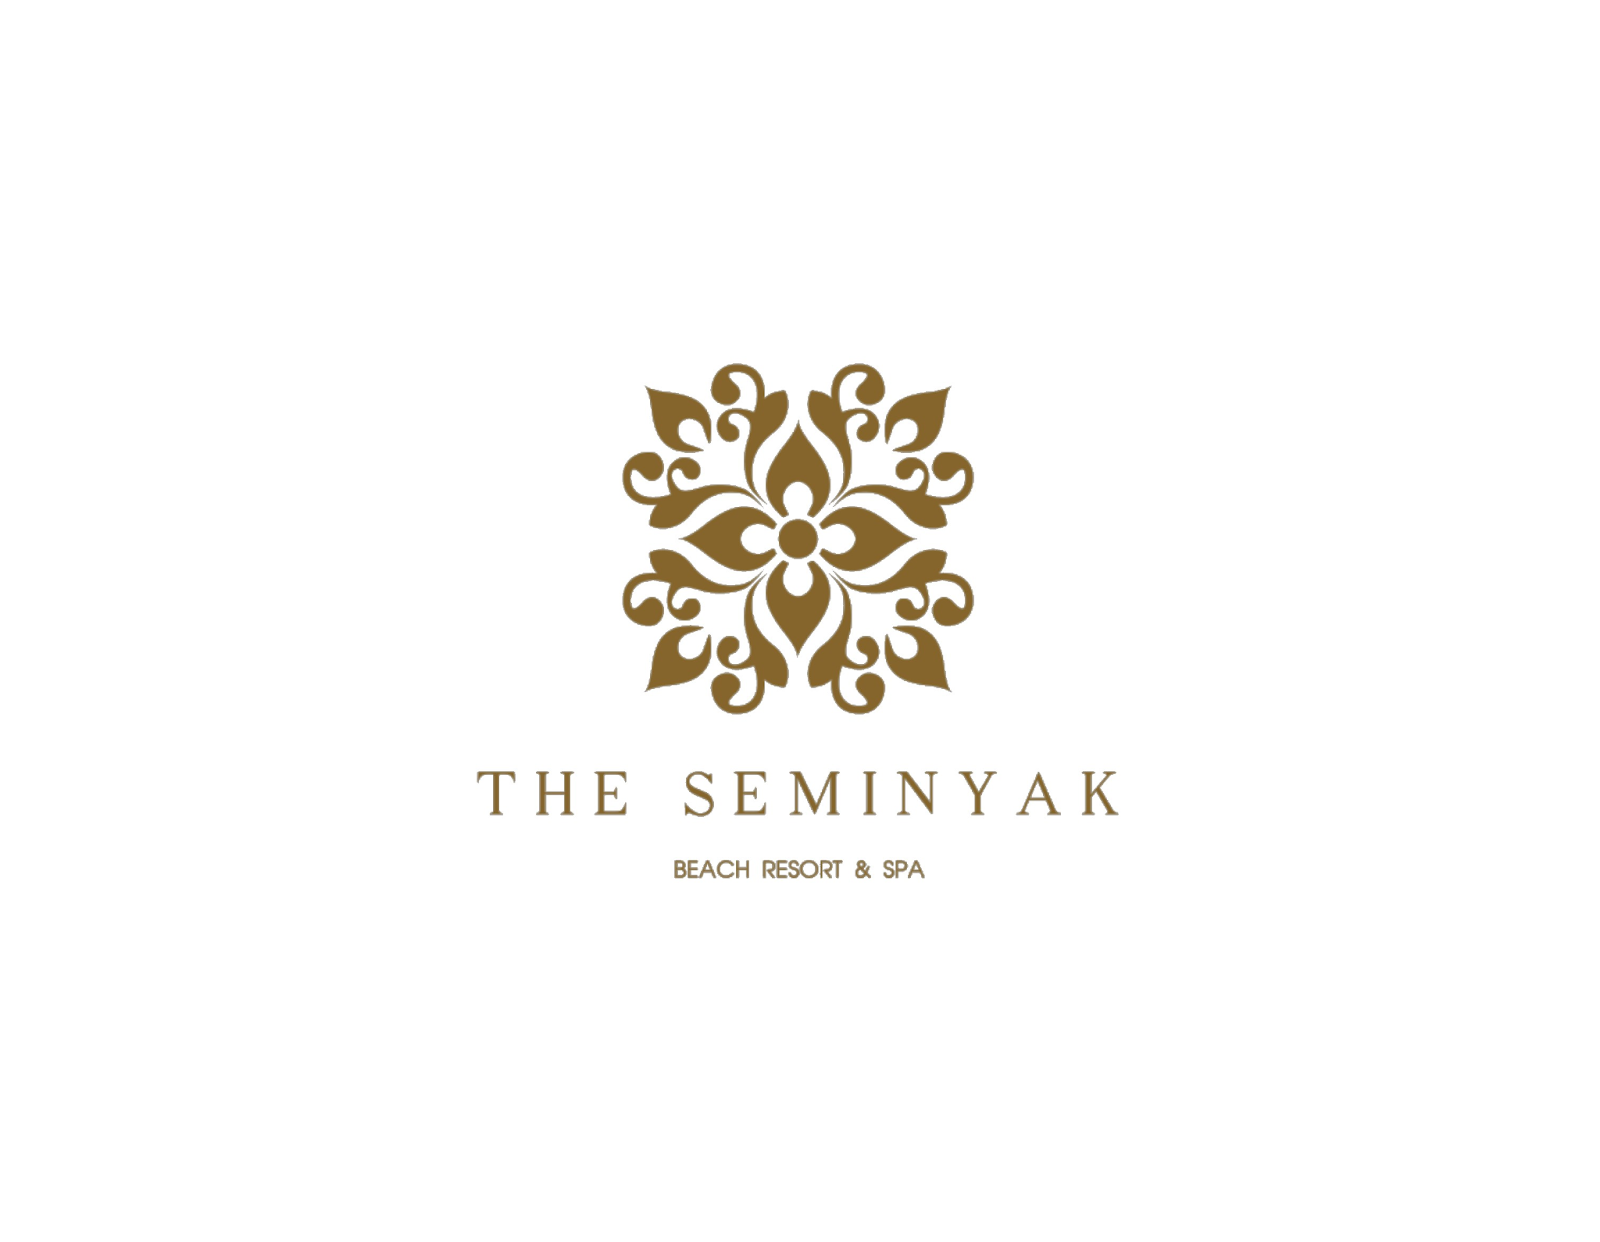 The Seminyak Beach